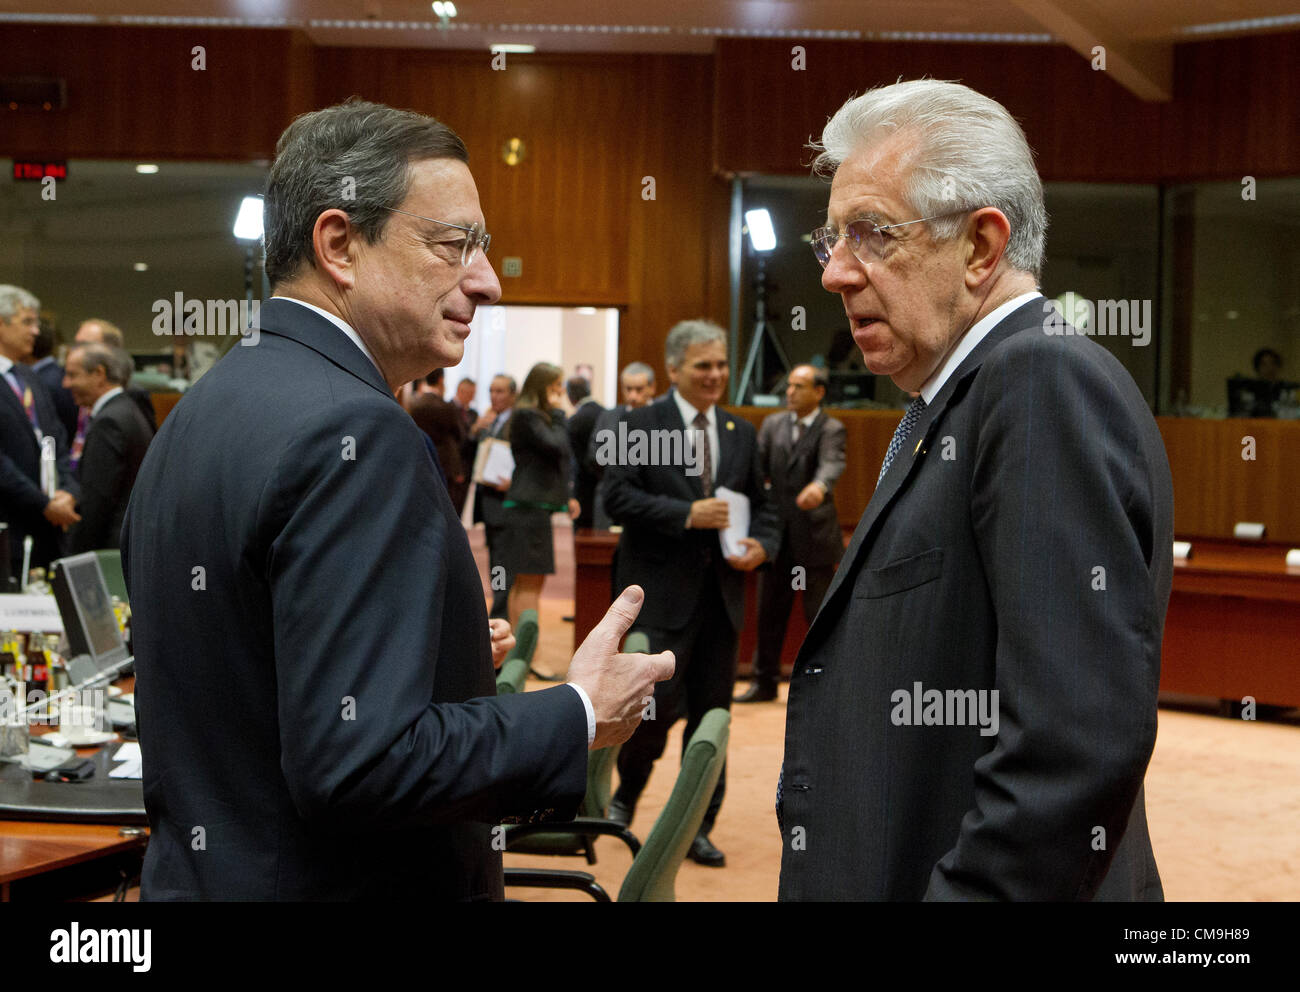 Mario Draghi monti président de l'ue politique de la BCE Banque D'Images